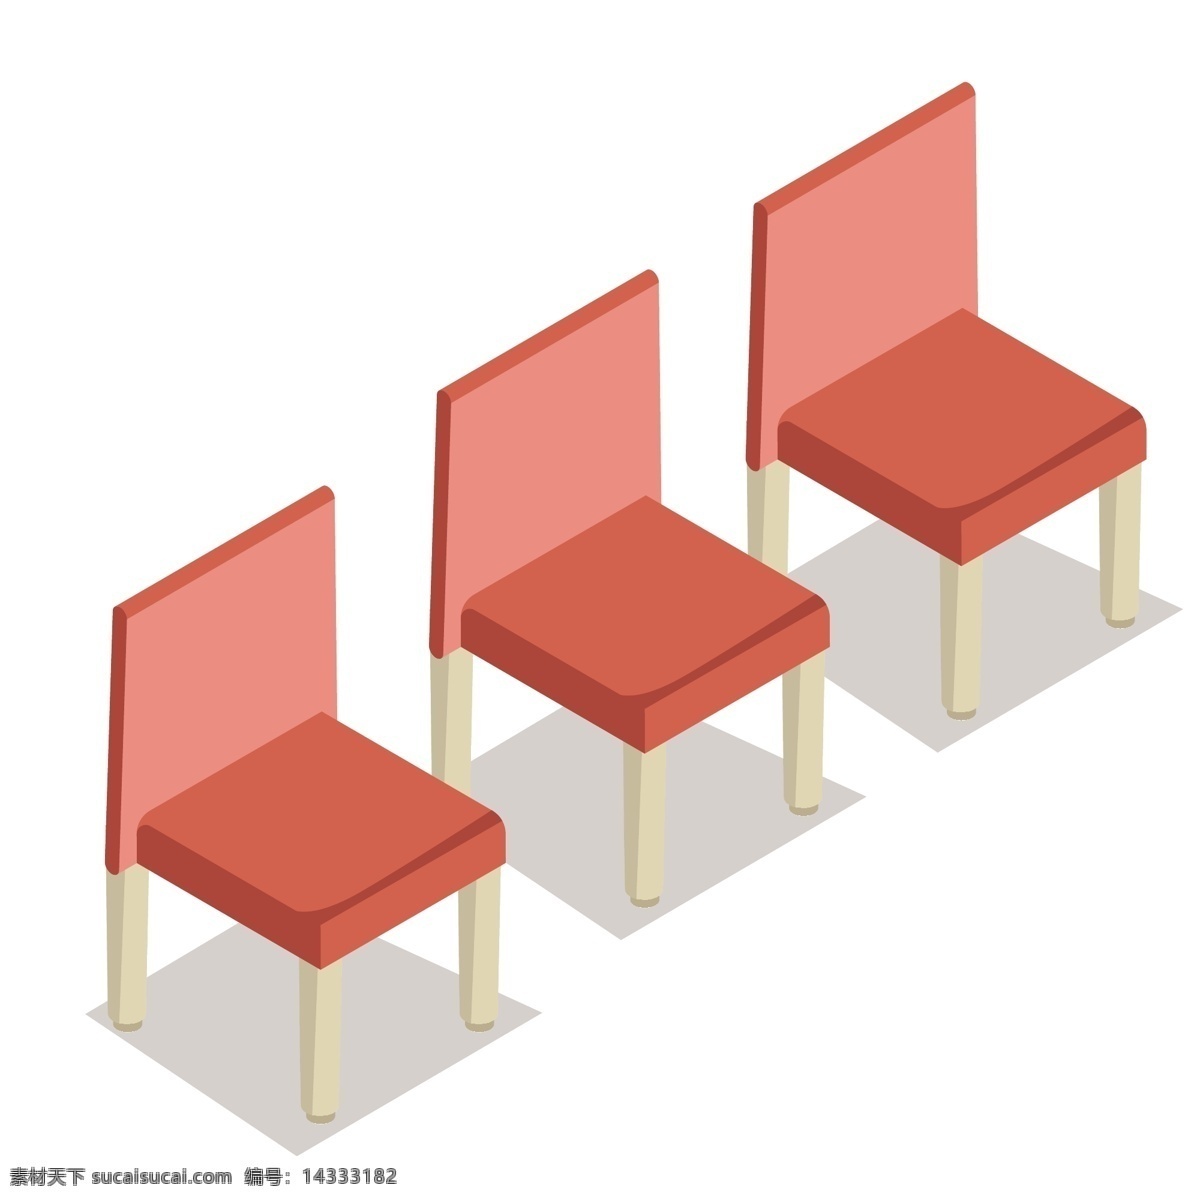 浅 粉色 装饰 椅子 插画 浅粉色 卡通 彩色 小清新 创意 矢量 商务 科技 办公 元素 现代 简约 图案